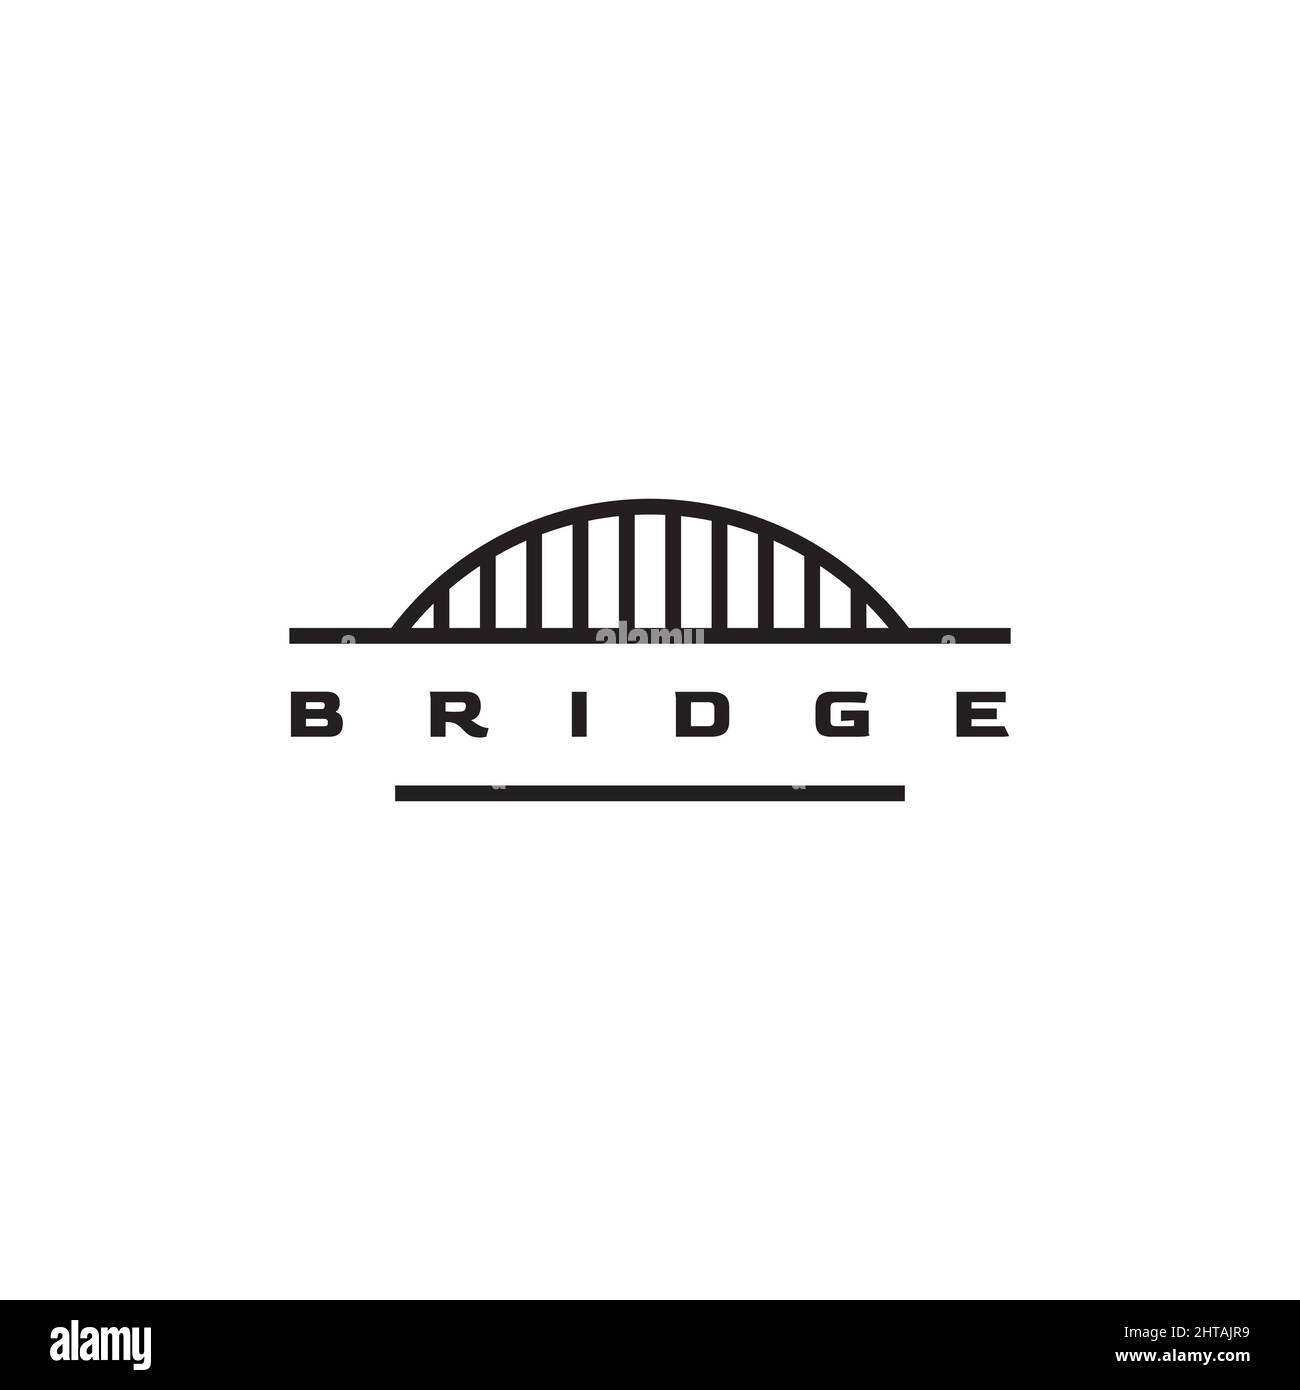 Bridge logo design vector template Stock Vector